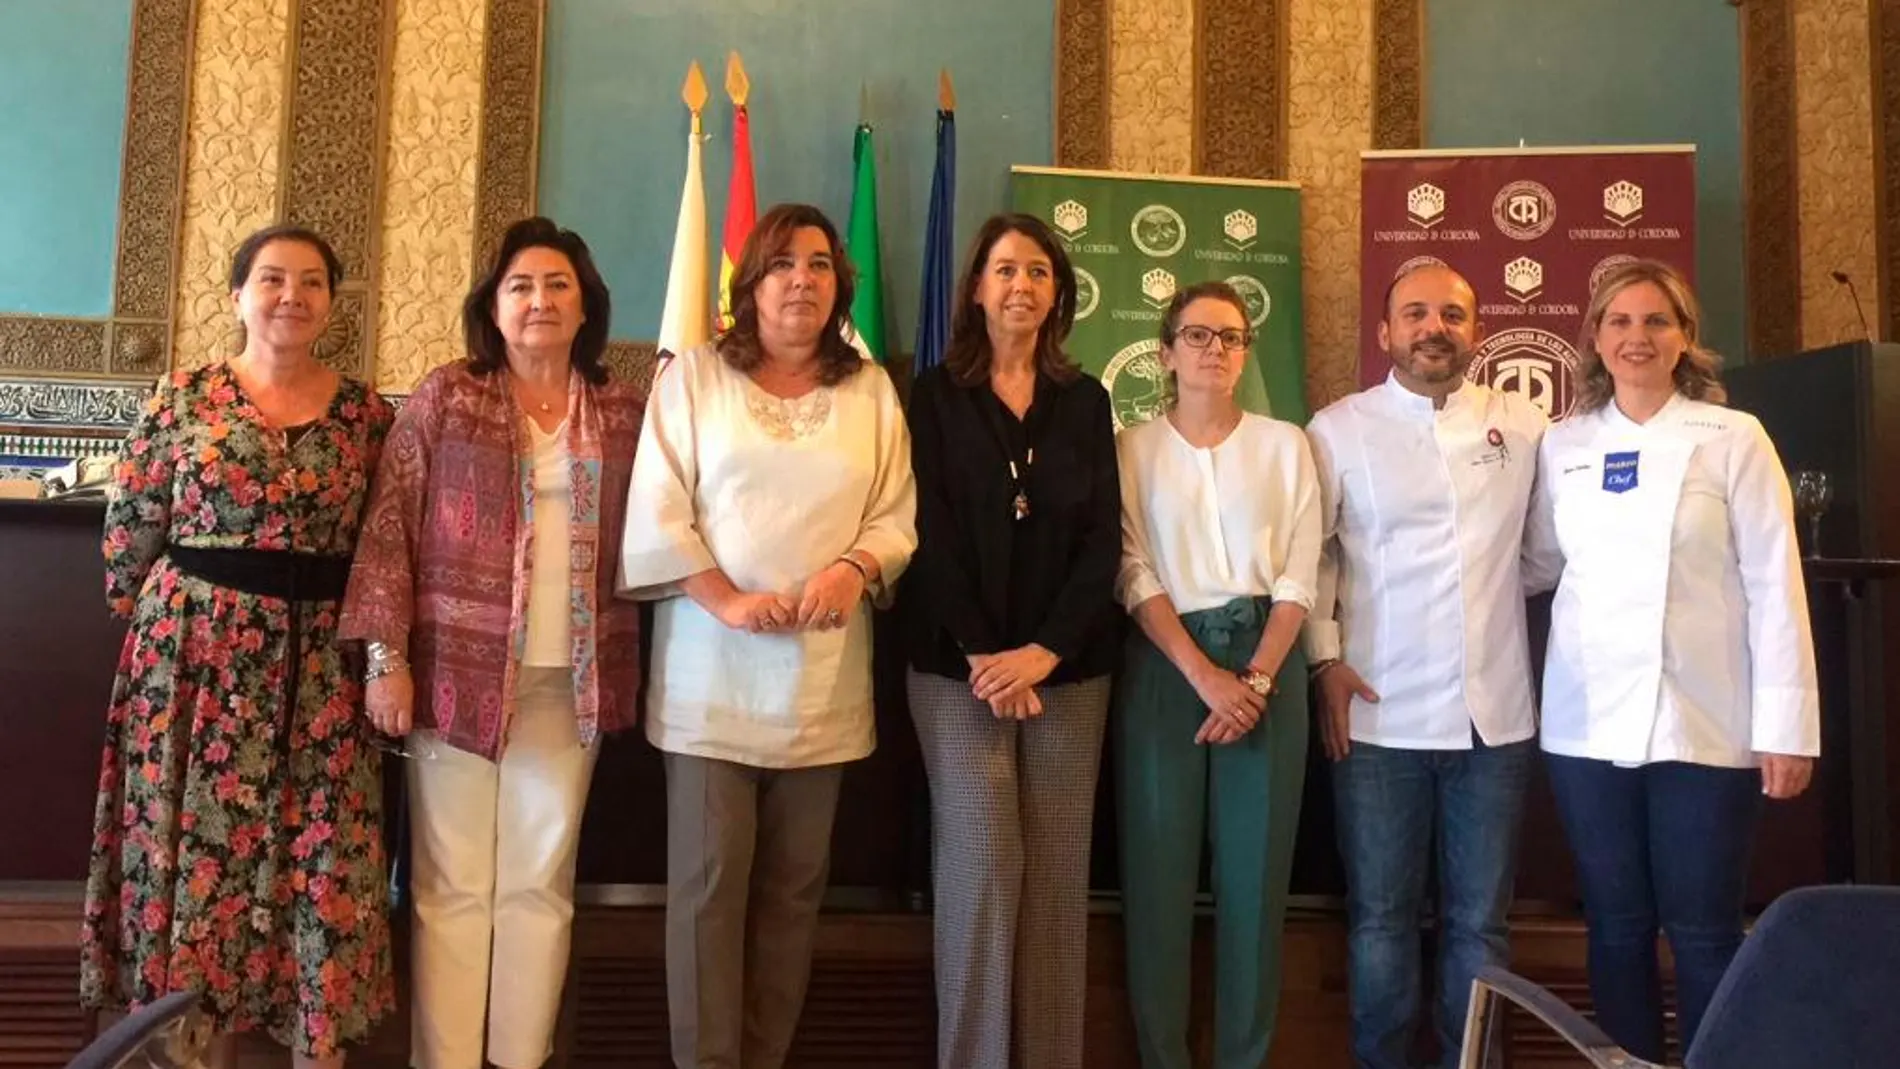 Rosa Vañó, Almudena Villegas, Salud Serrano, Rosario Moyano, Diana Martín, Kisko García, Blanca Sanchez.